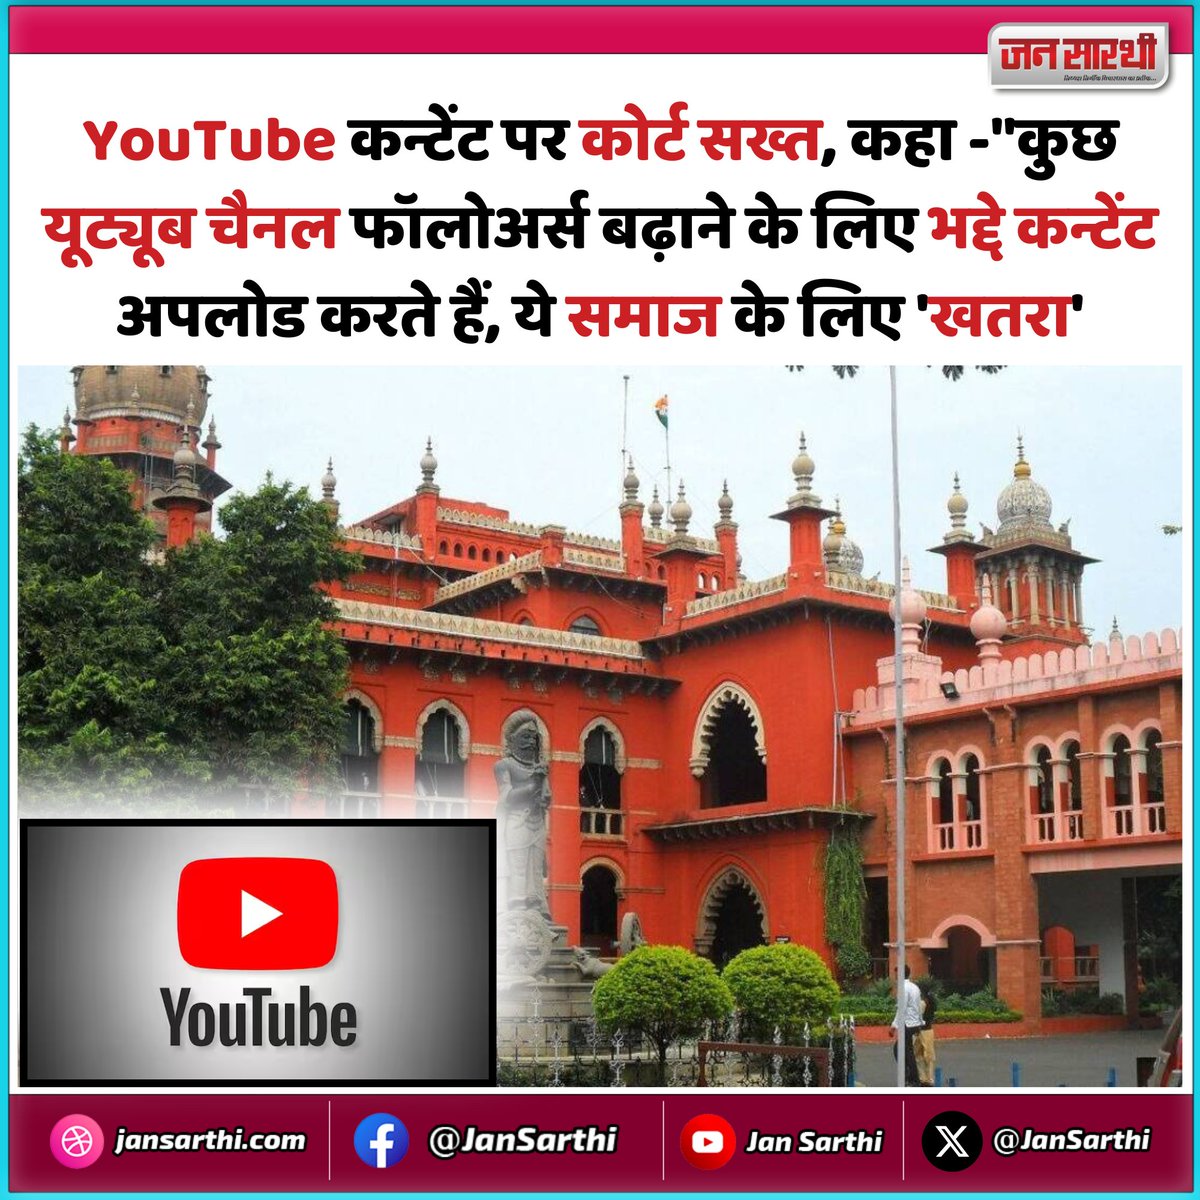 YouTube कन्टेंट पर कोर्ट सख्त,कहा -'कुछ यूट्यूब चैनल फॉलोअर्स बढ़ाने के लिए भद्दे कन्टेंट अपलोड करते हैं, ये समाज के लिए 'खतरा'
#YouTubers #youtubechannel #MadrasHighCourt